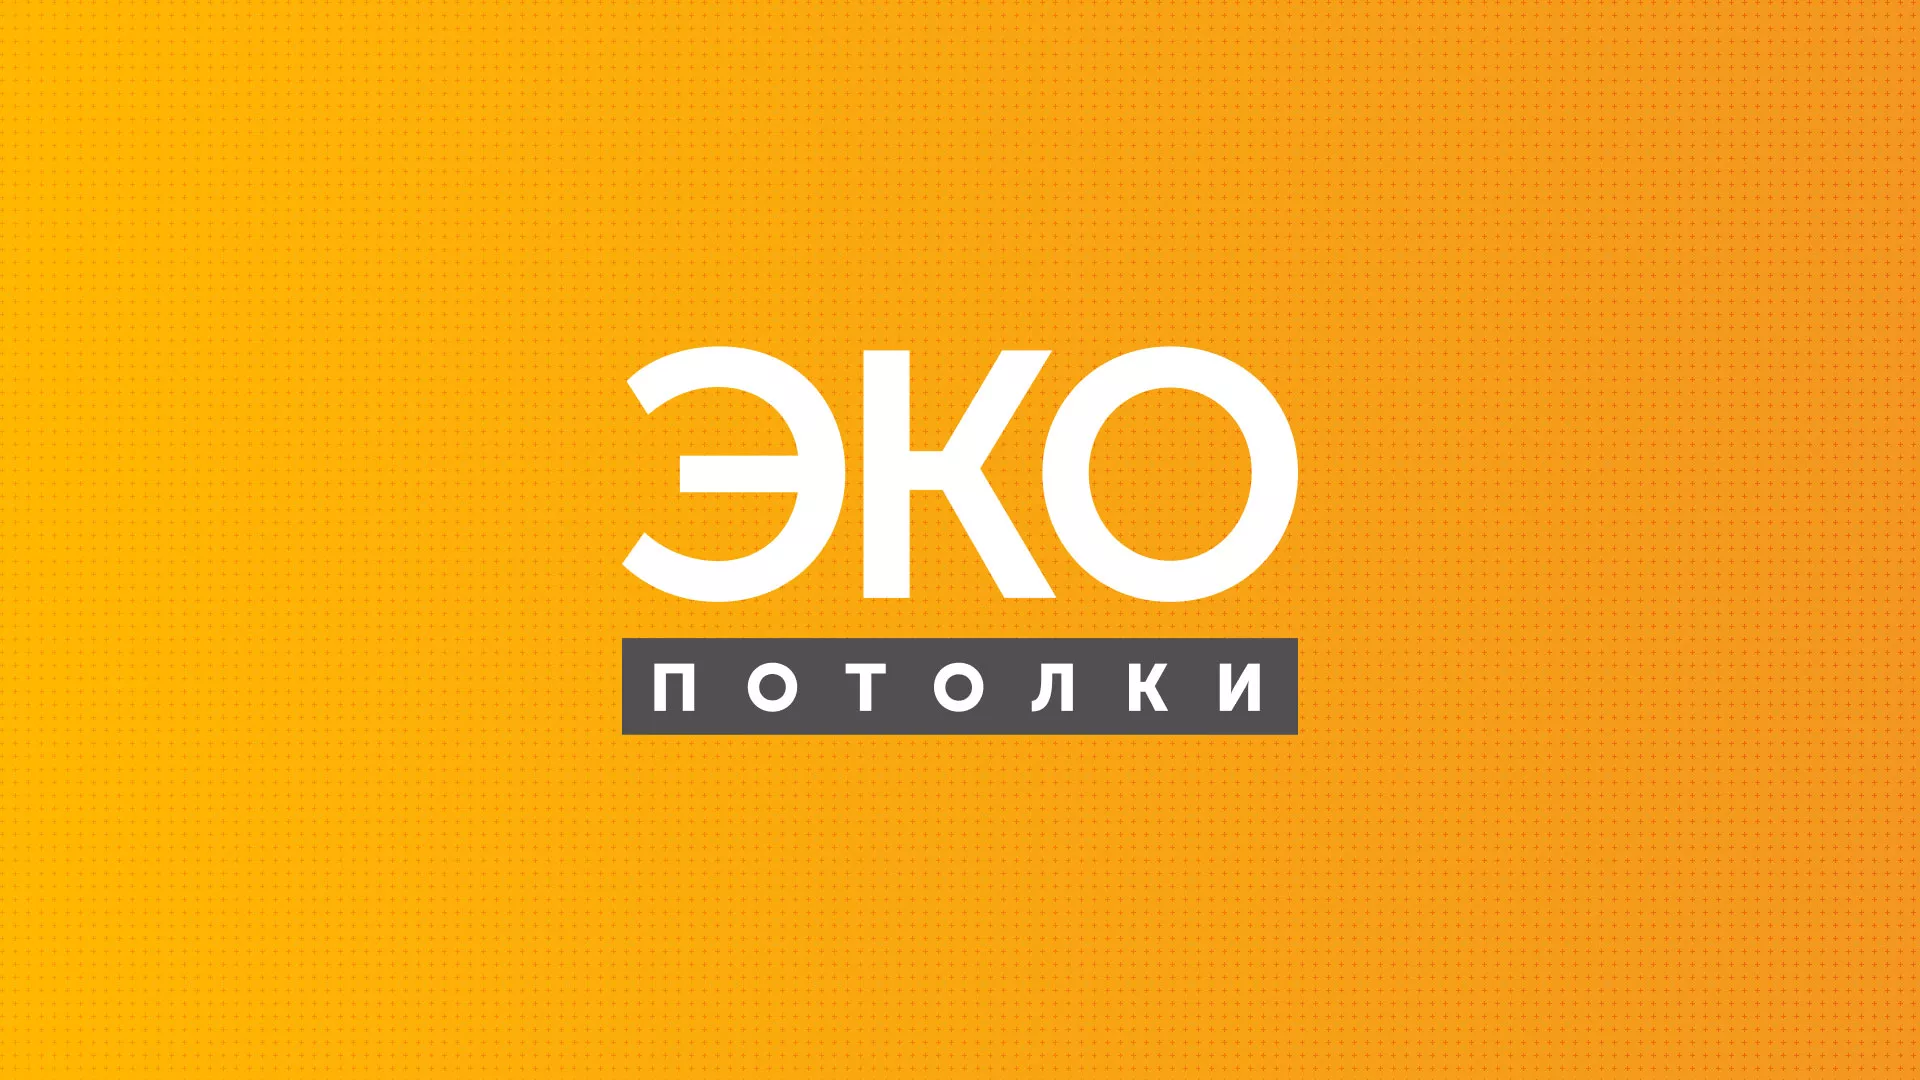 Разработка сайта по натяжным потолкам «Эко Потолки» в Брянске